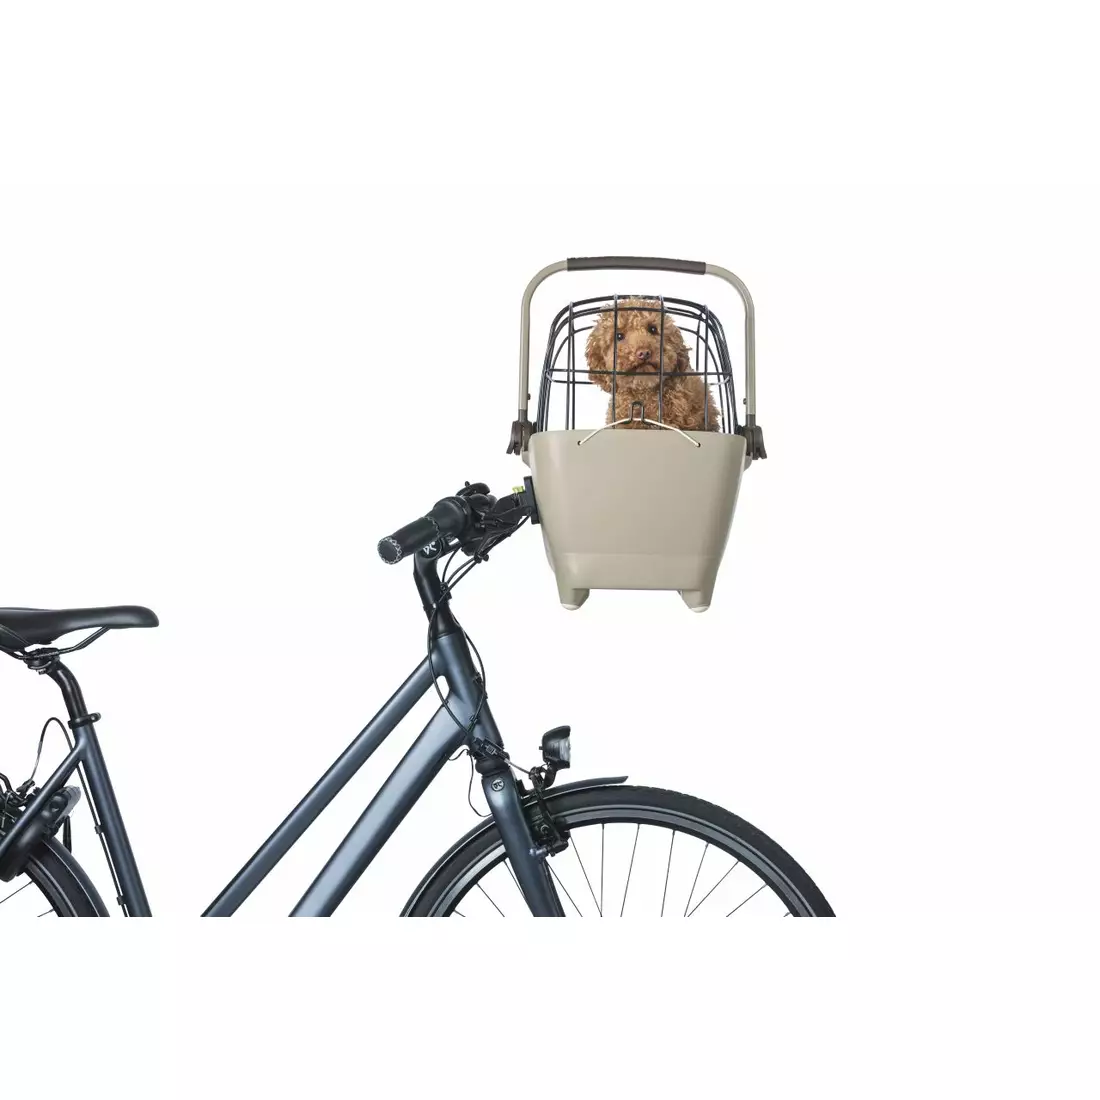 BASIL BUDDY KF Fahrrad-Vorderkorb für einen Hund mit Kissen, braun